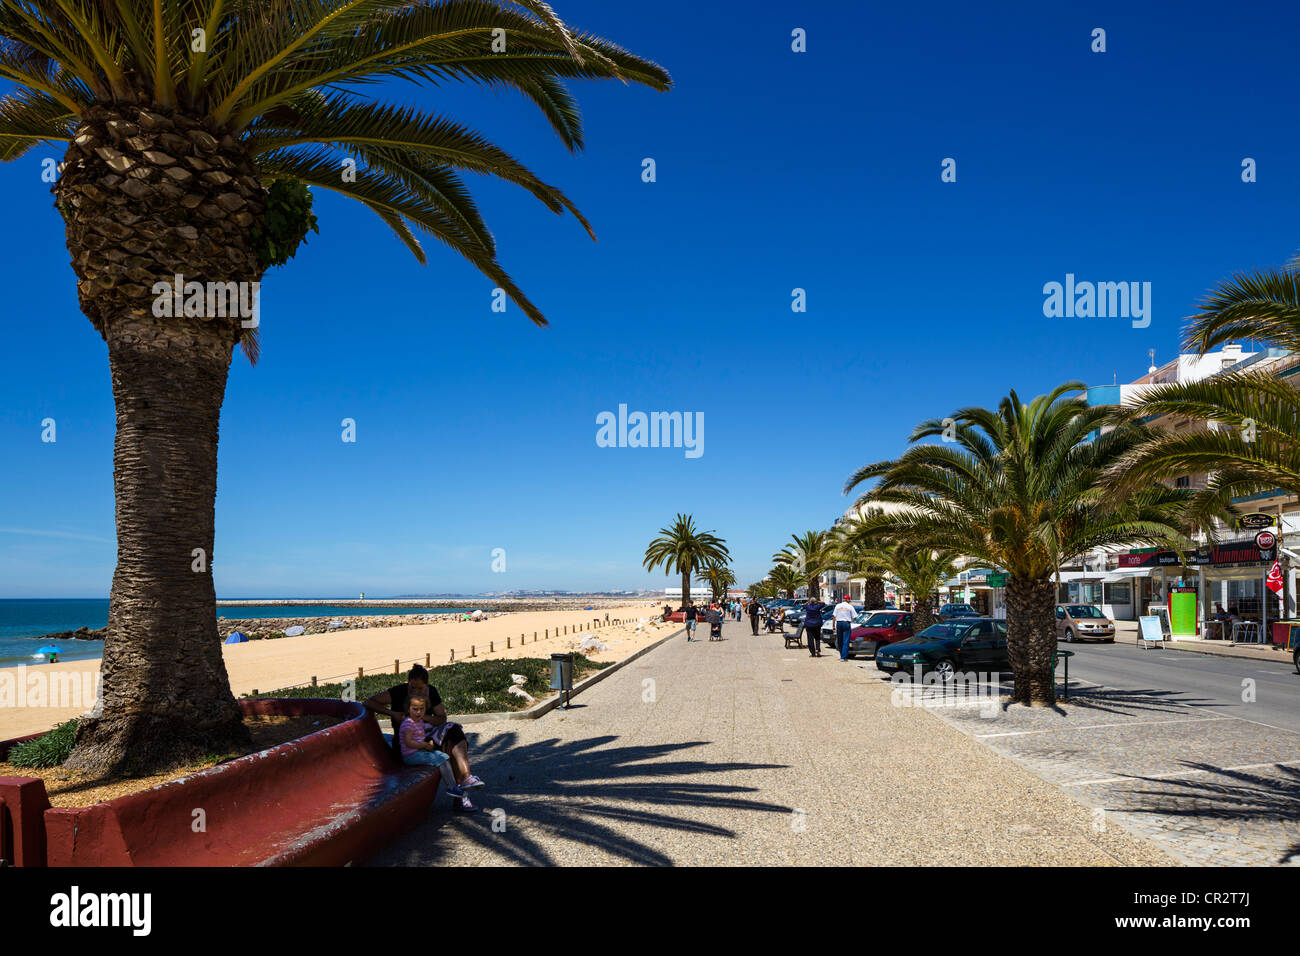 La spiaggia e la passeggiata sul lungomare in Quarteira, Algarve, PORTOGALLO Foto Stock